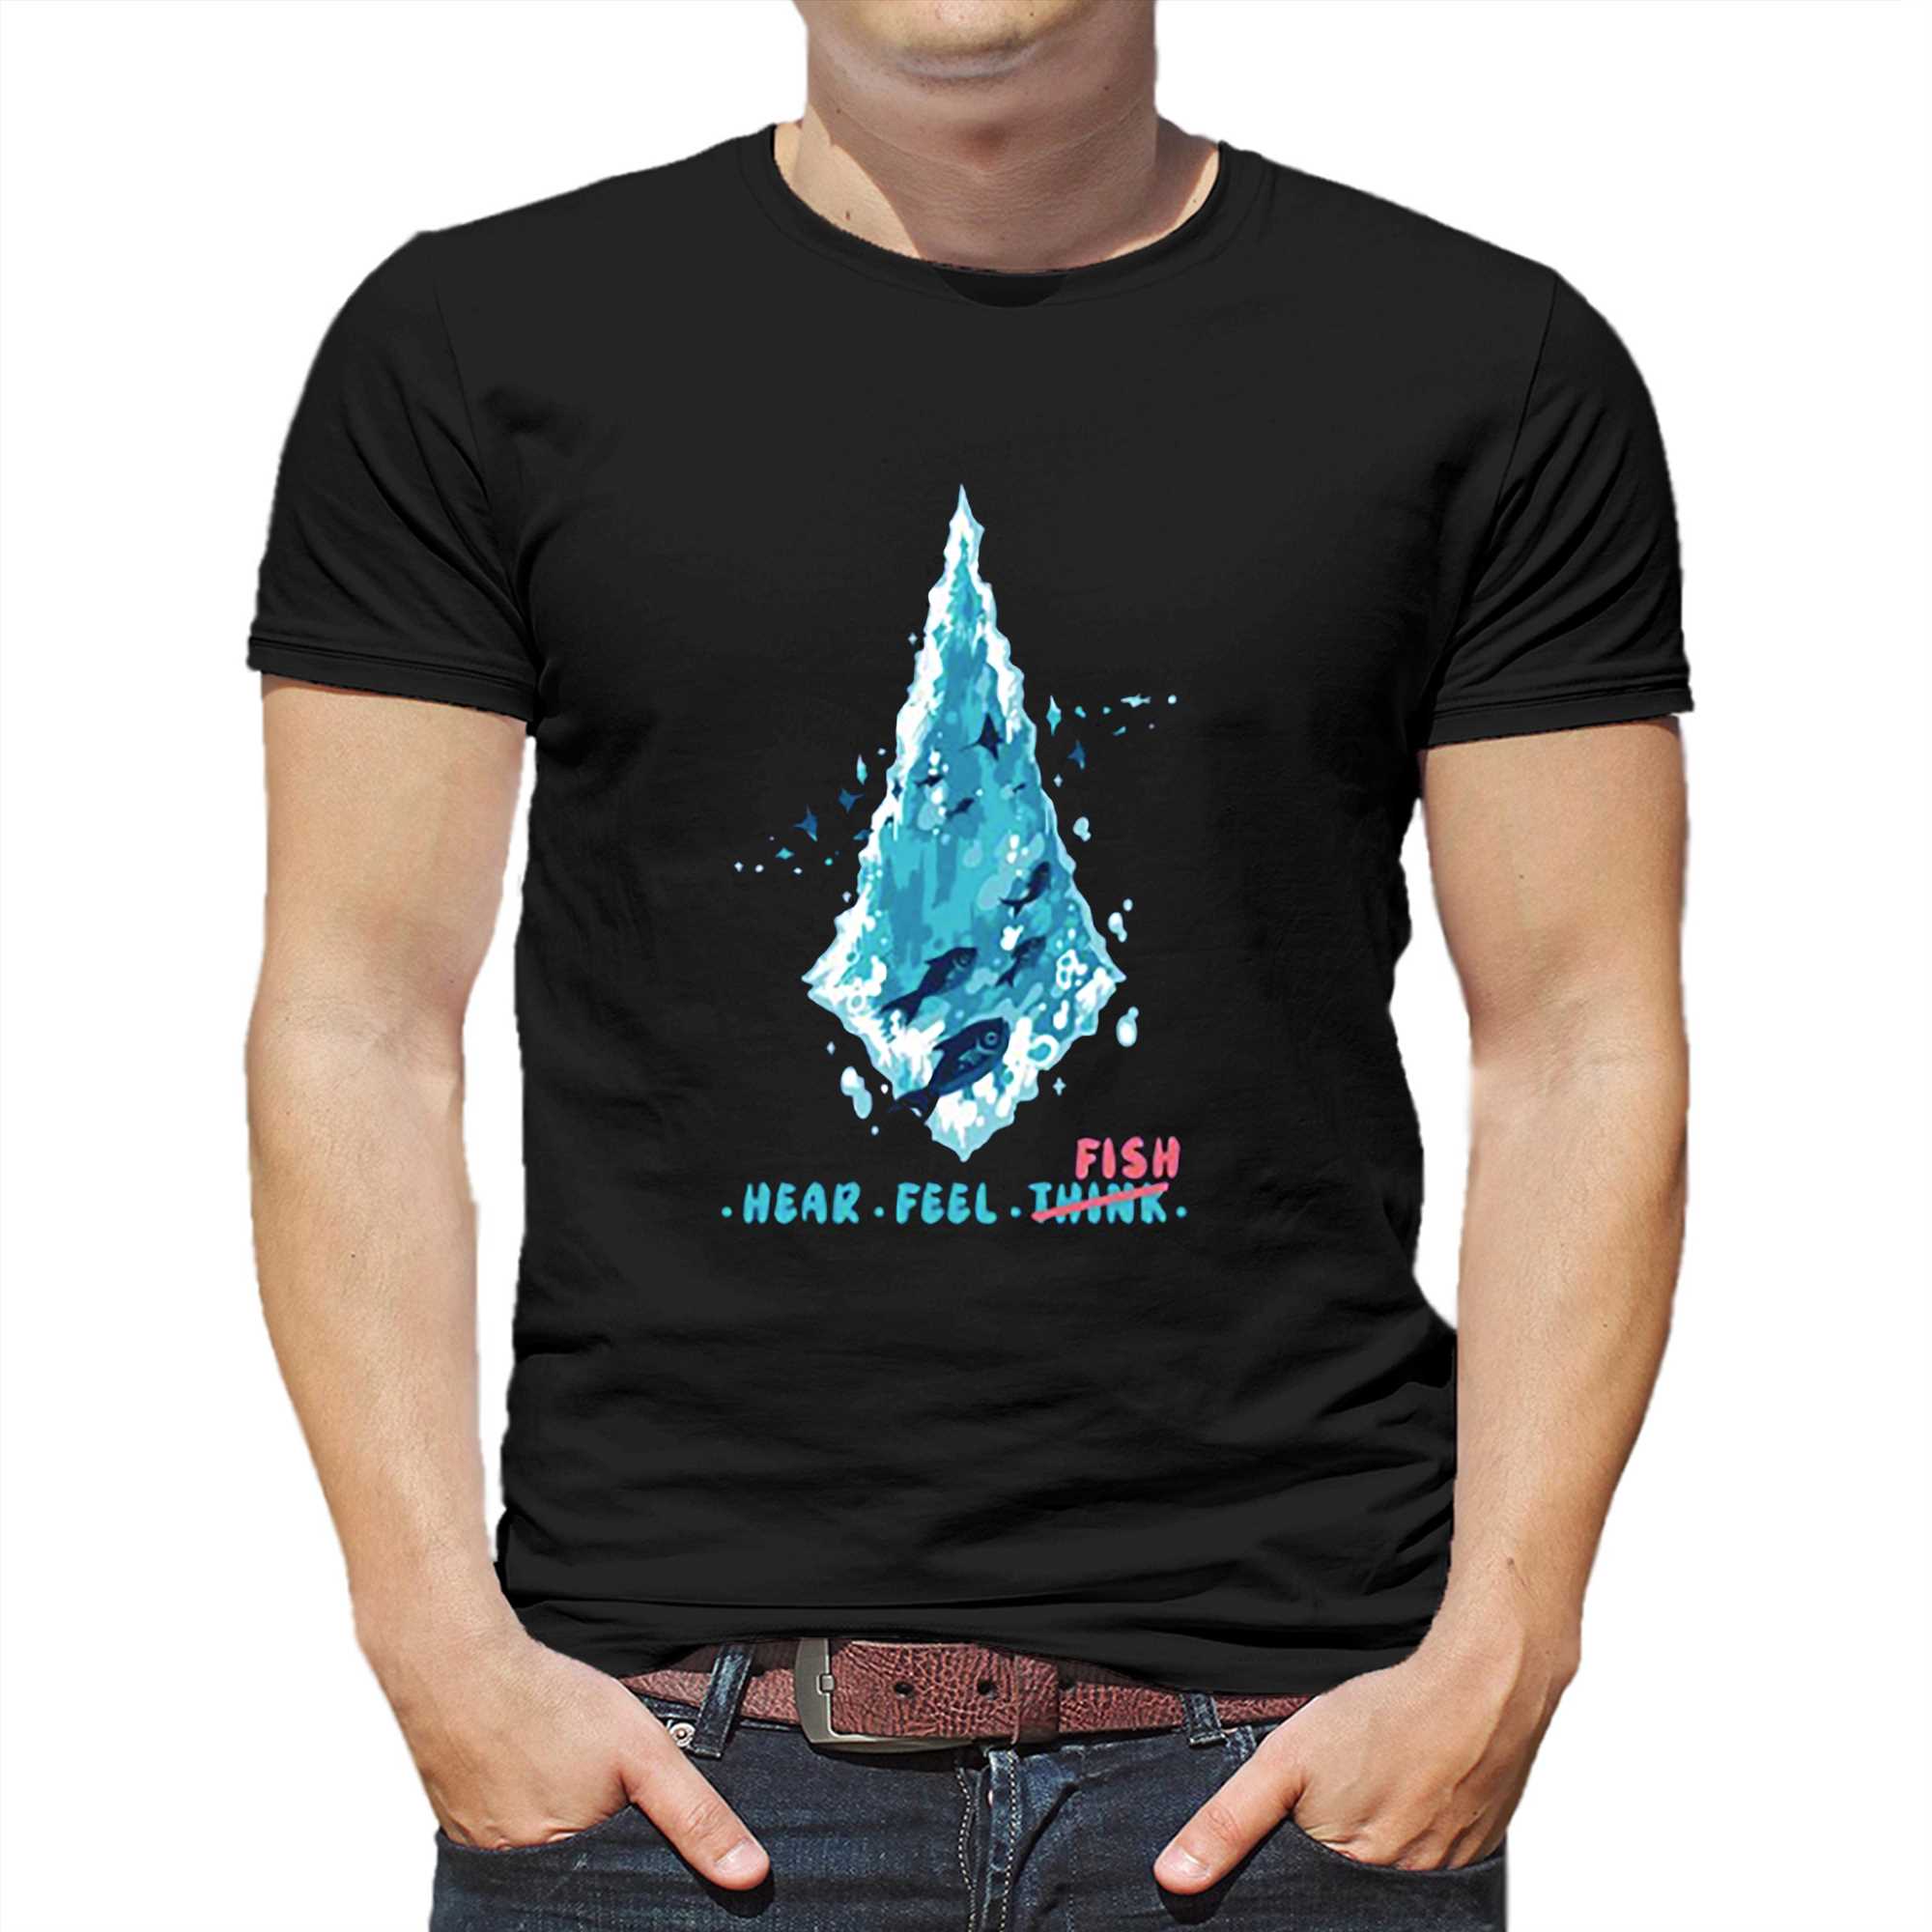 Hear Feel Fish Think T-shirt - Shibtee Clothing